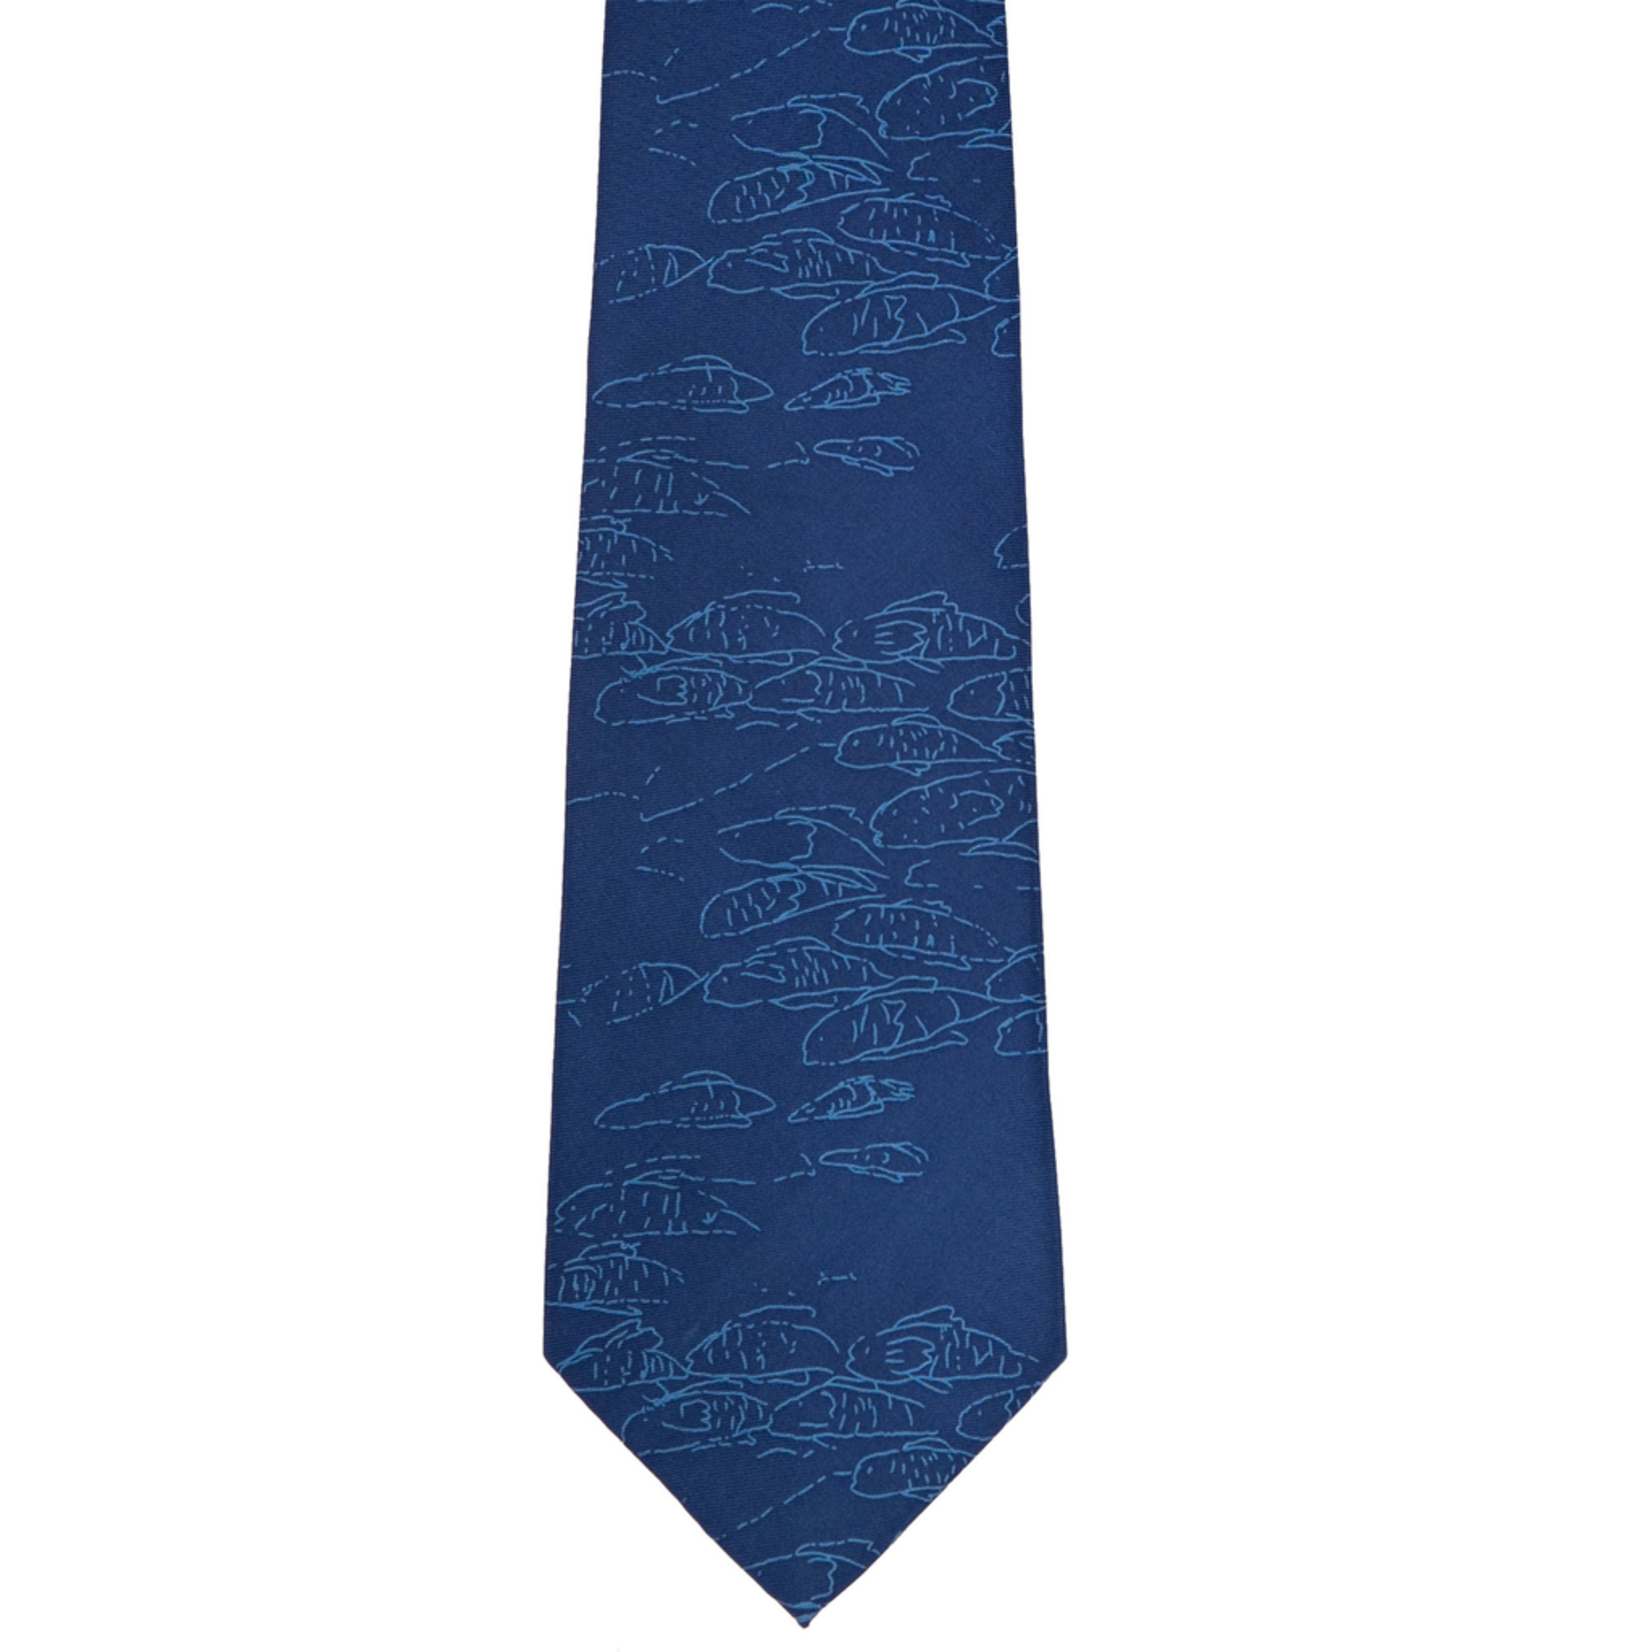 Accessories Silk tie - Blue Fish